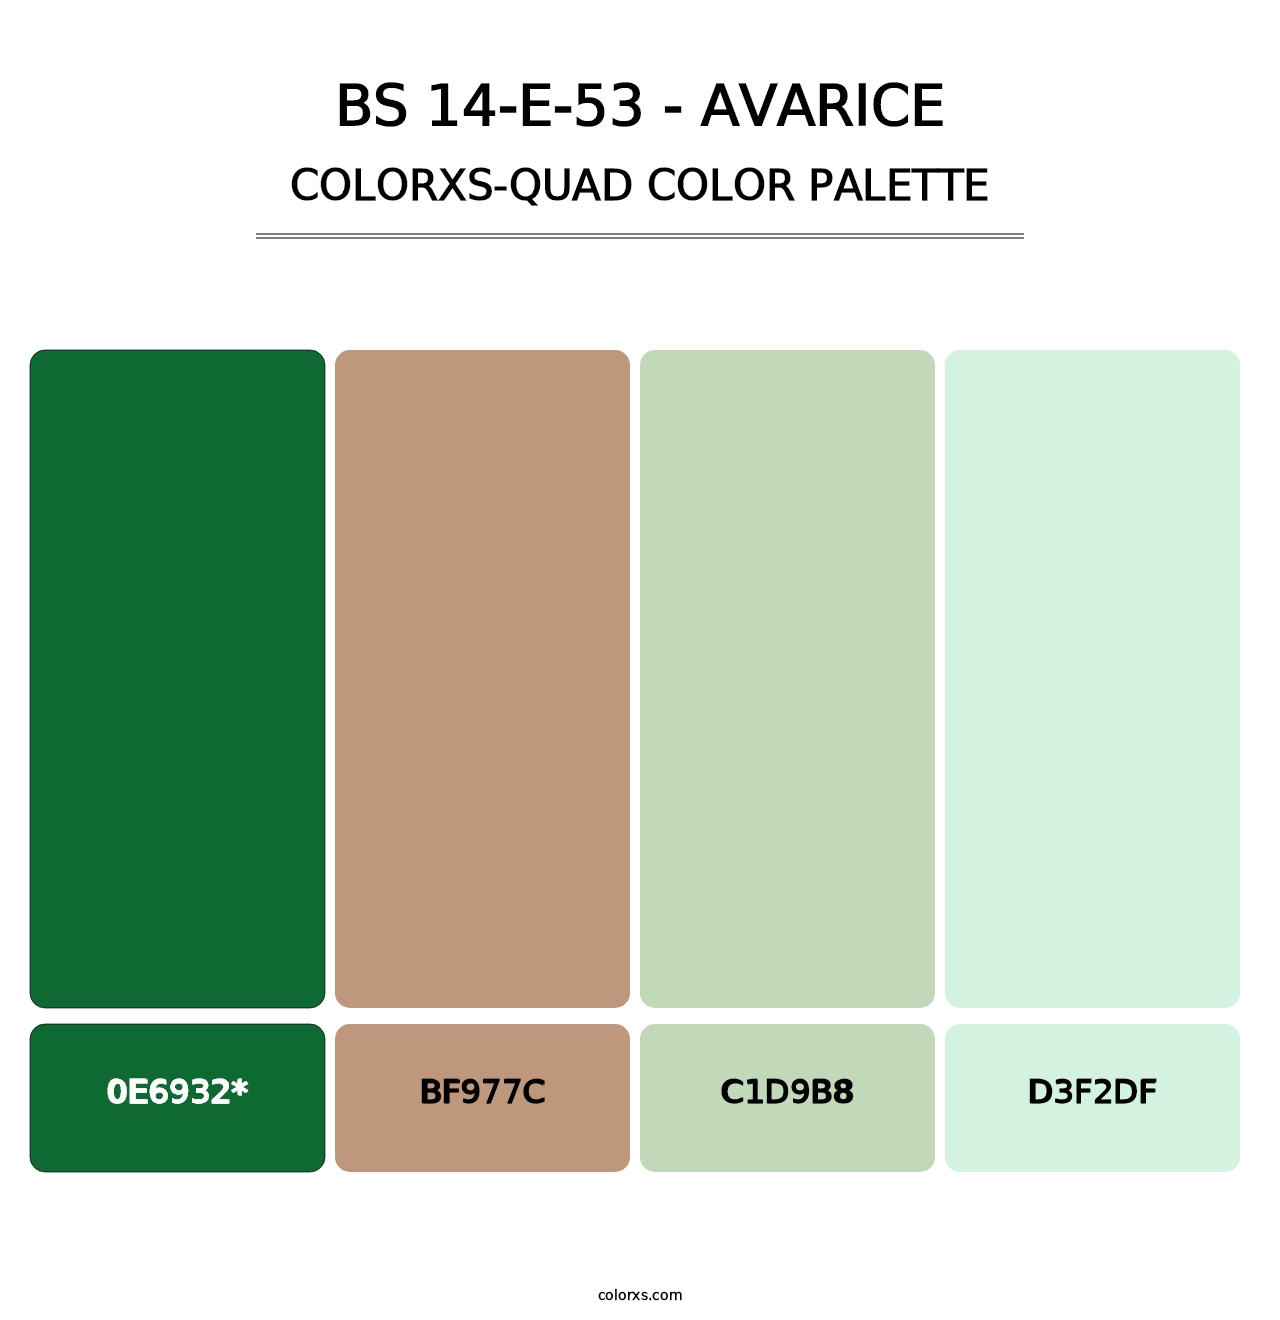 BS 14-E-53 - Avarice - Colorxs Quad Palette